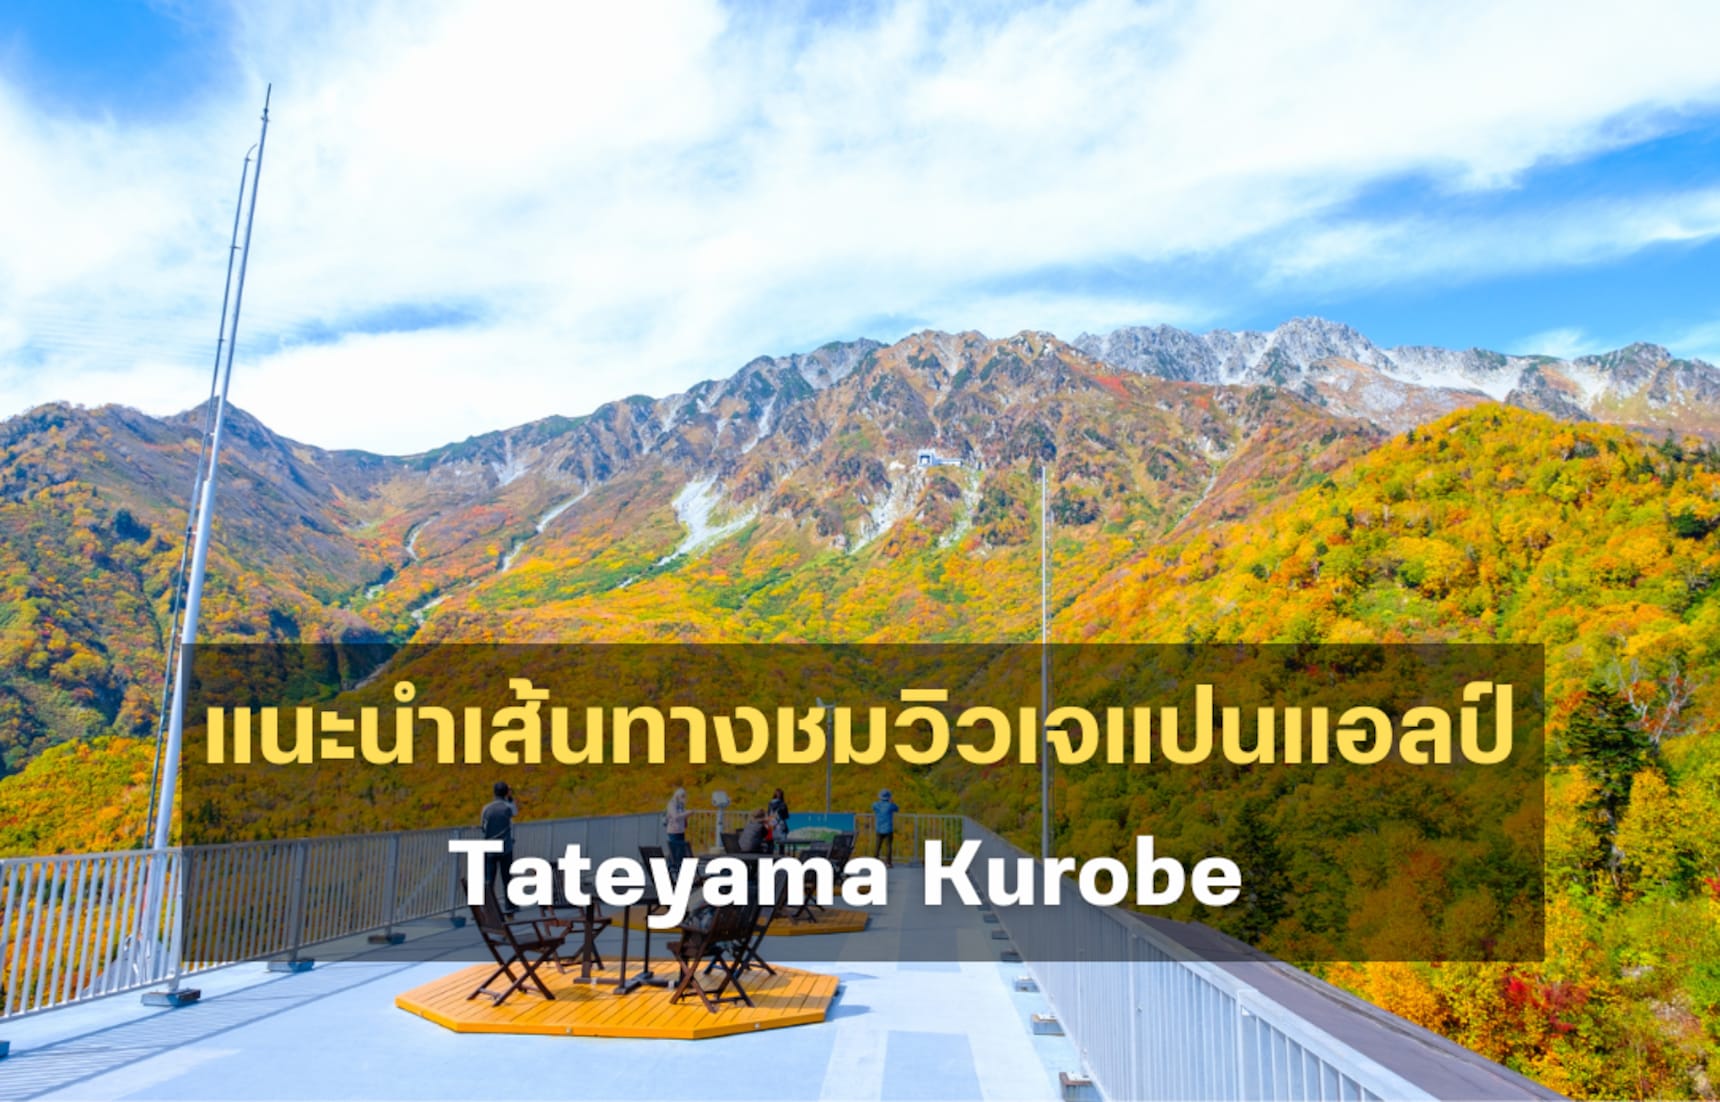 แนะนำ 1-Day Trip เส้นทางชมวิวเจแปนแอลป์ Tateyama Kurobe มือใหม่ก็ไปได้!